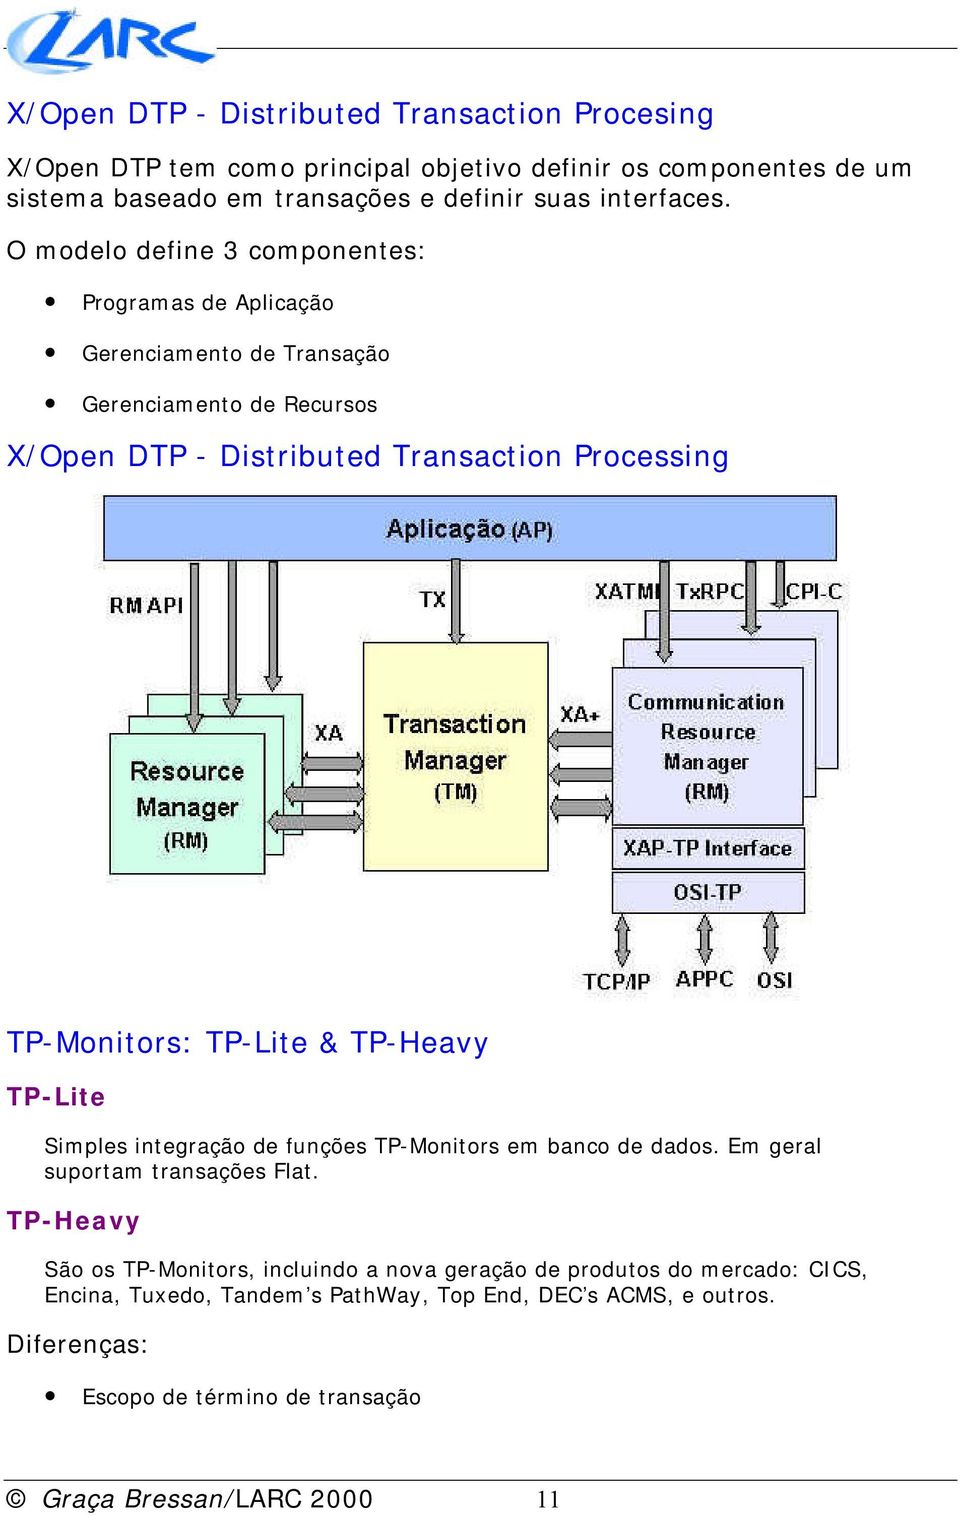 TP-Lite & TP-Heavy TP-Lite Simples integração de funções TP-Monitors em banco de dados. Em geral suportam transações Flat.